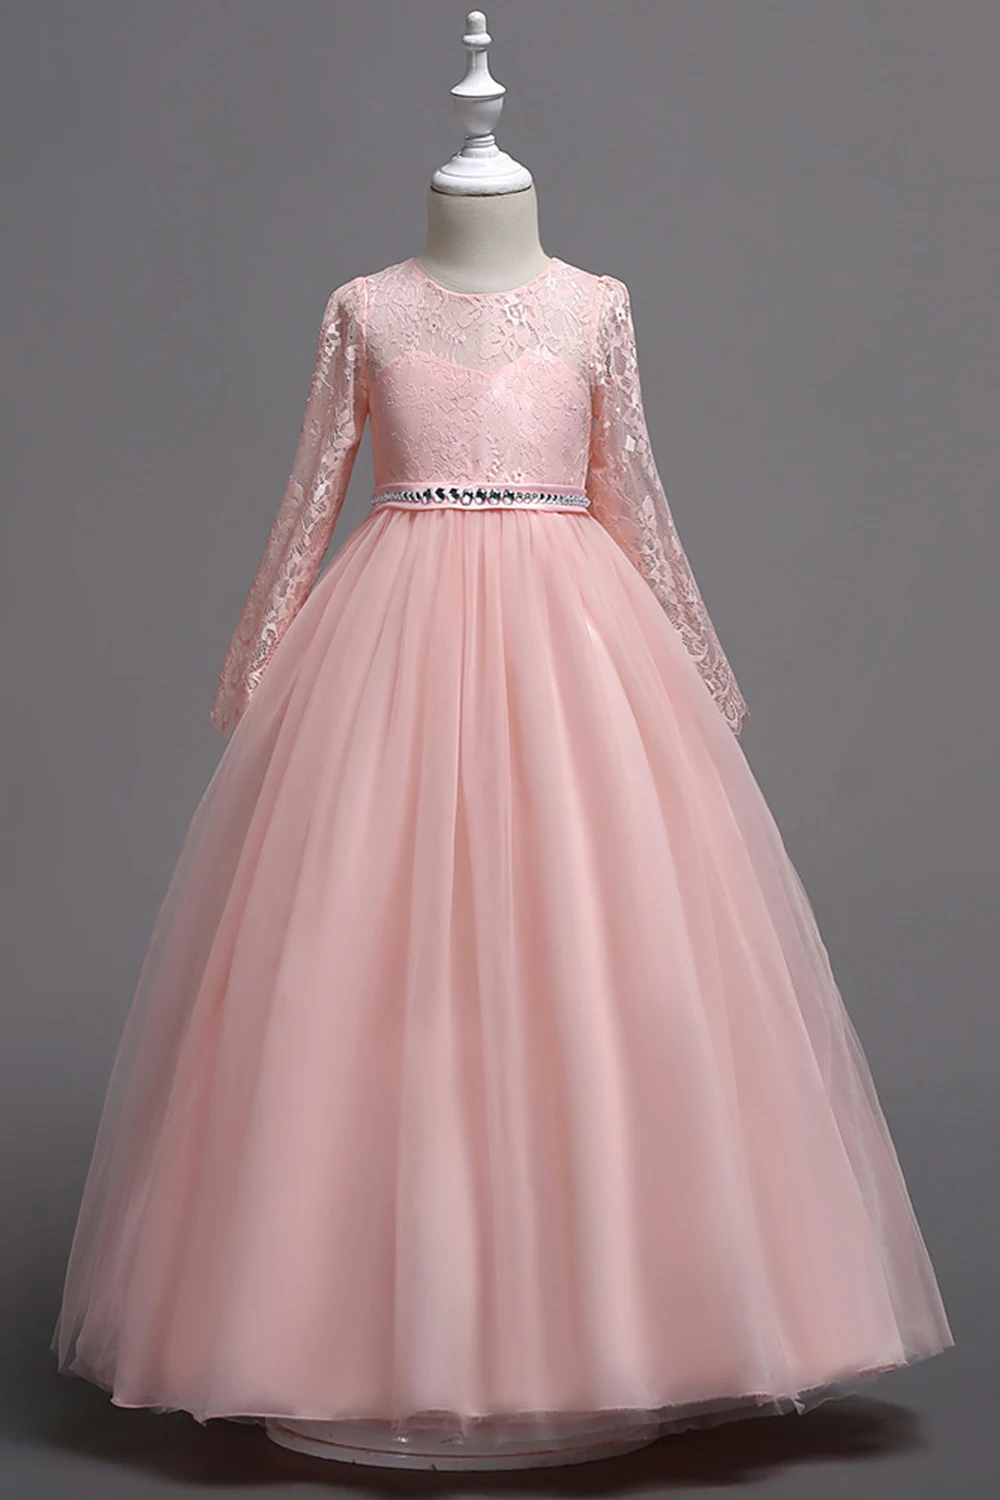 Новое поступление, розовое кружевное платье принцессы с длинными рукавами и цветочным узором для девочек, коллекция 2019 года, пышное платье